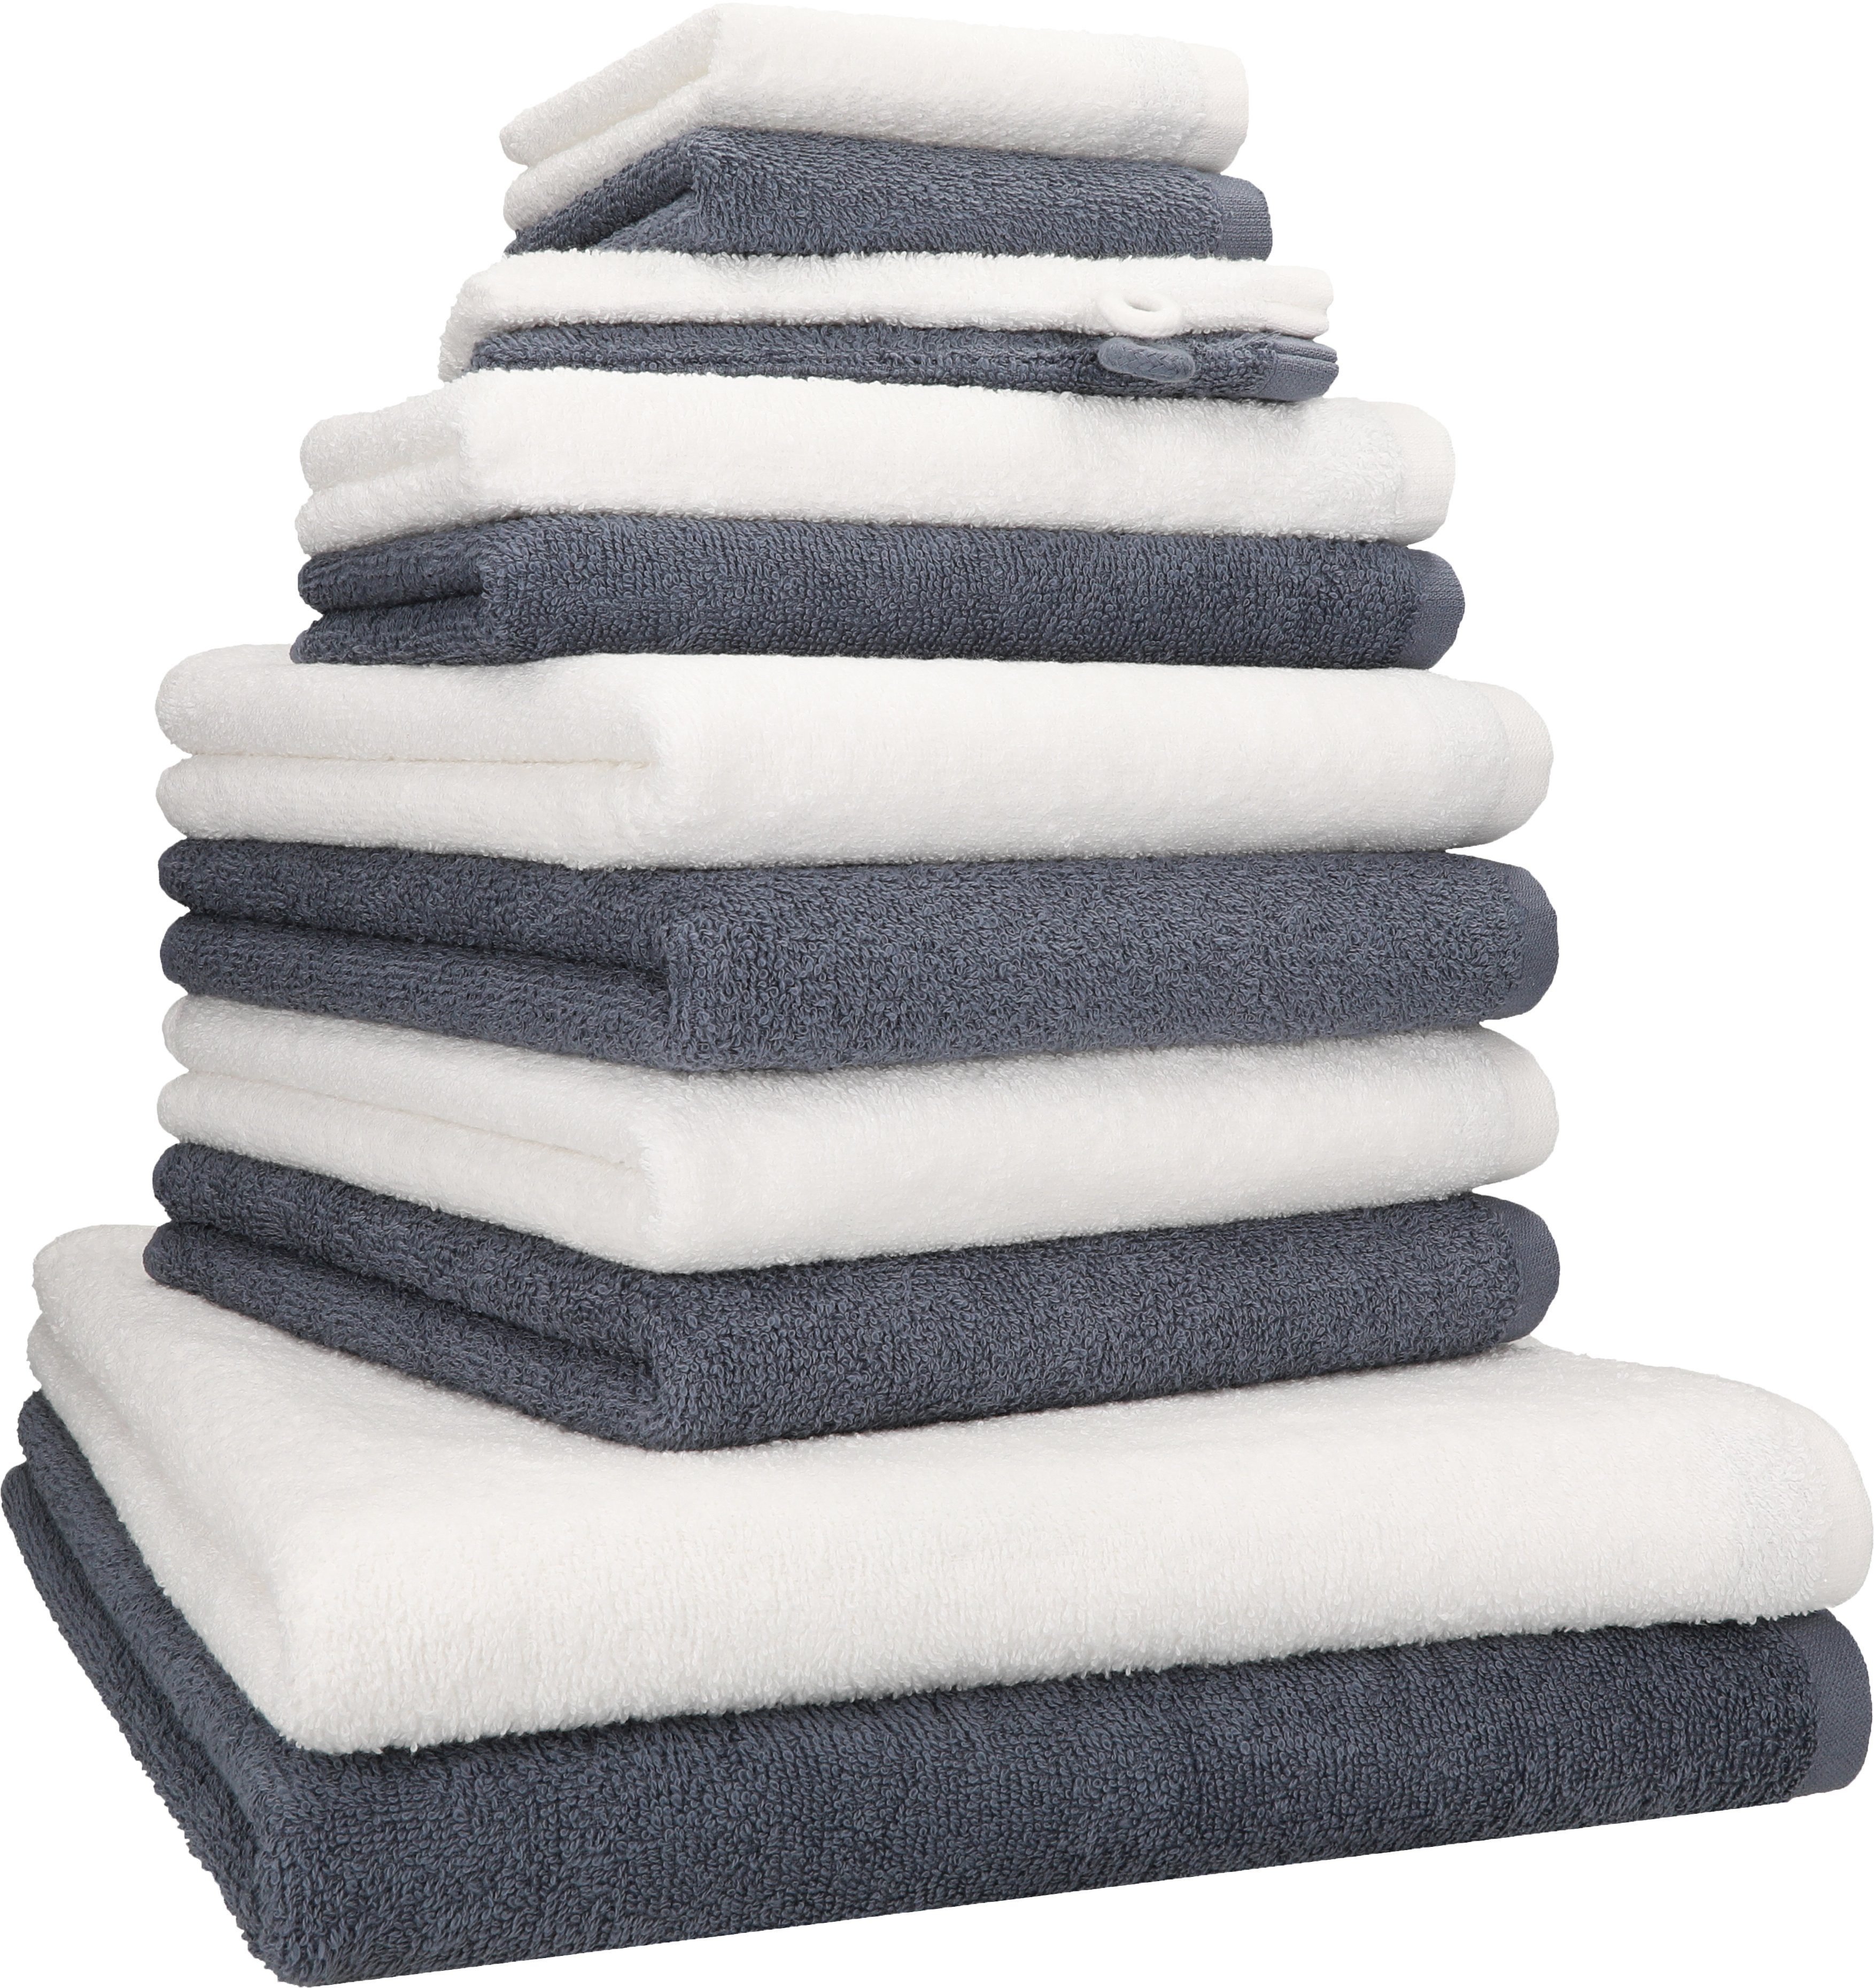 Handtuch Handtuch BERLIN Farbe TLG. 12 Baumwolle dunkelgrau weiß, Set Betz Set 100% -